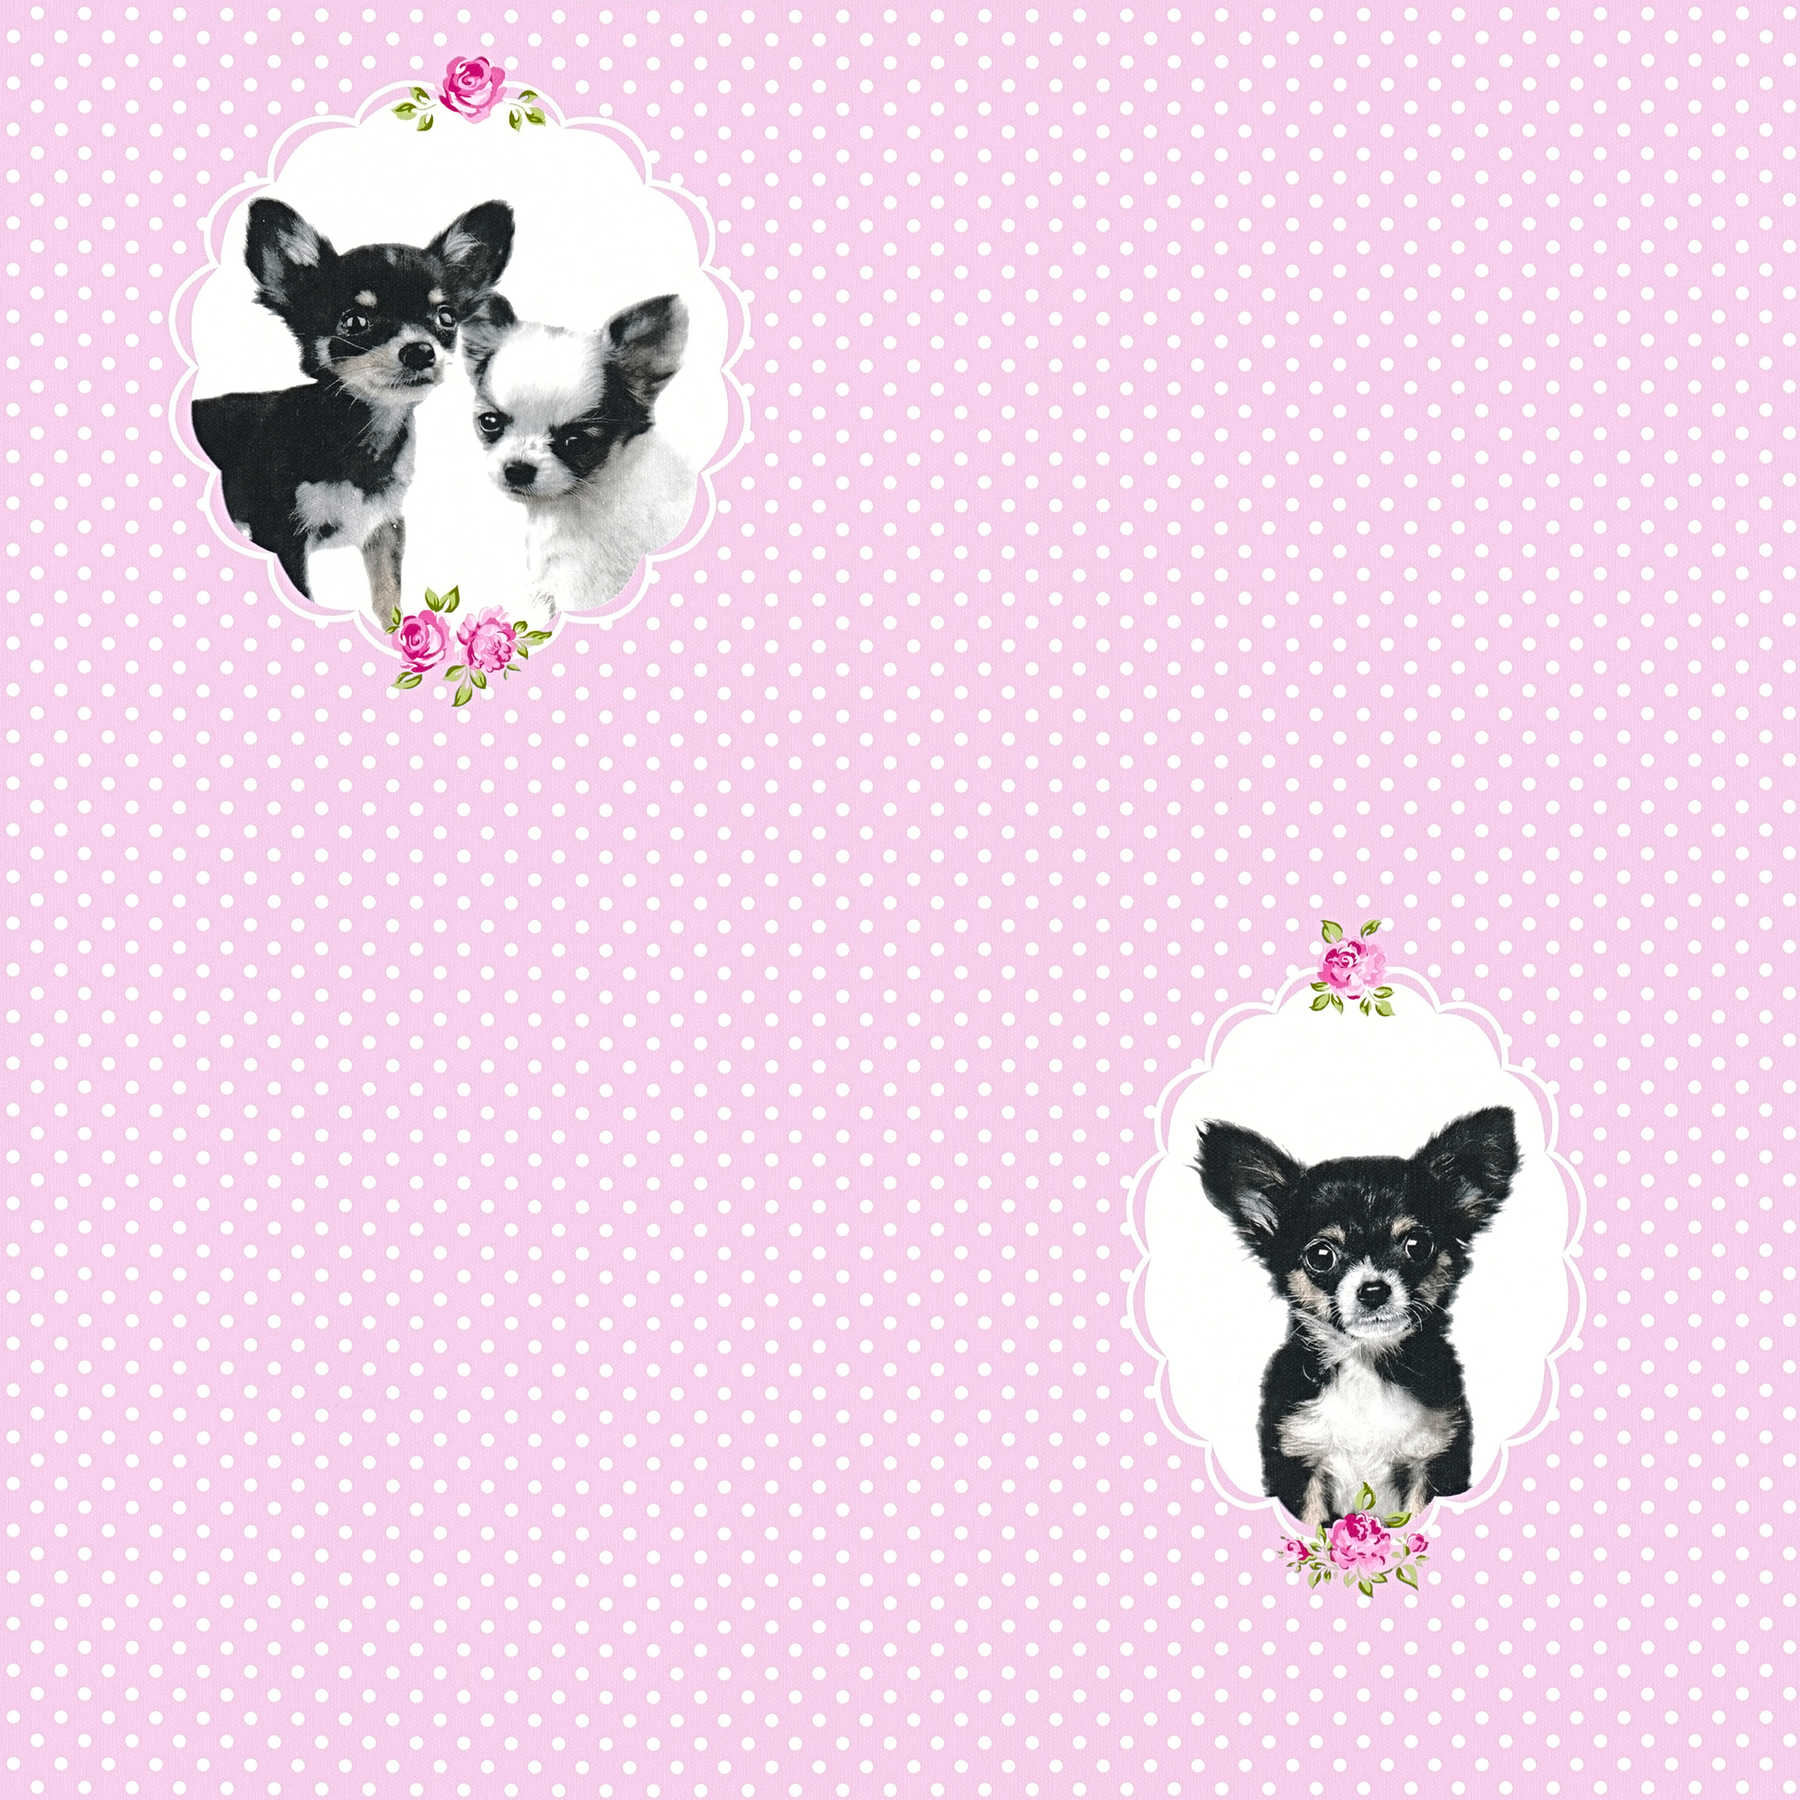 Papel pintado de lunares rosas con retratos de perros - Rosa
